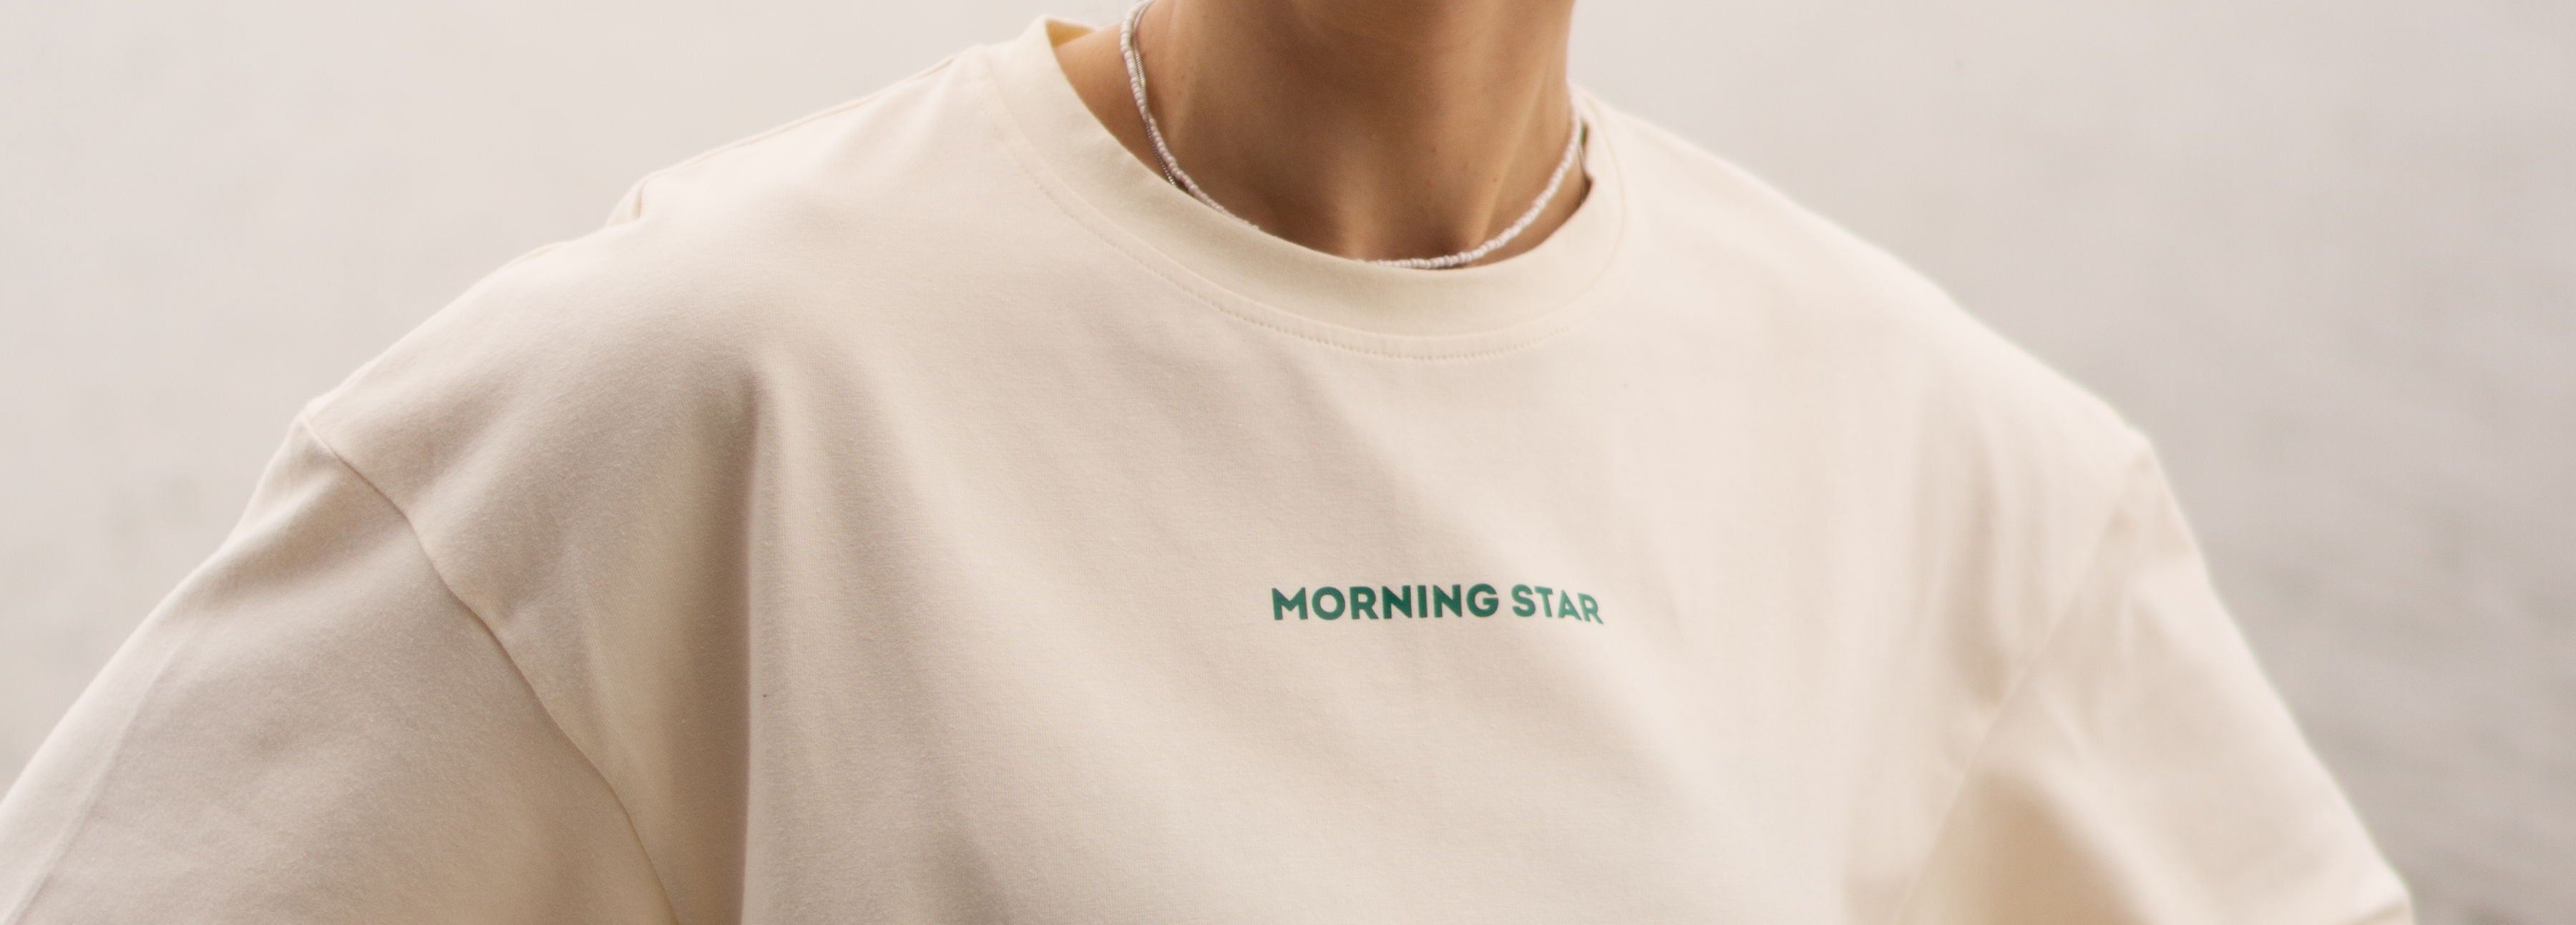 PRINTED T-SHIRTS - Morning Star